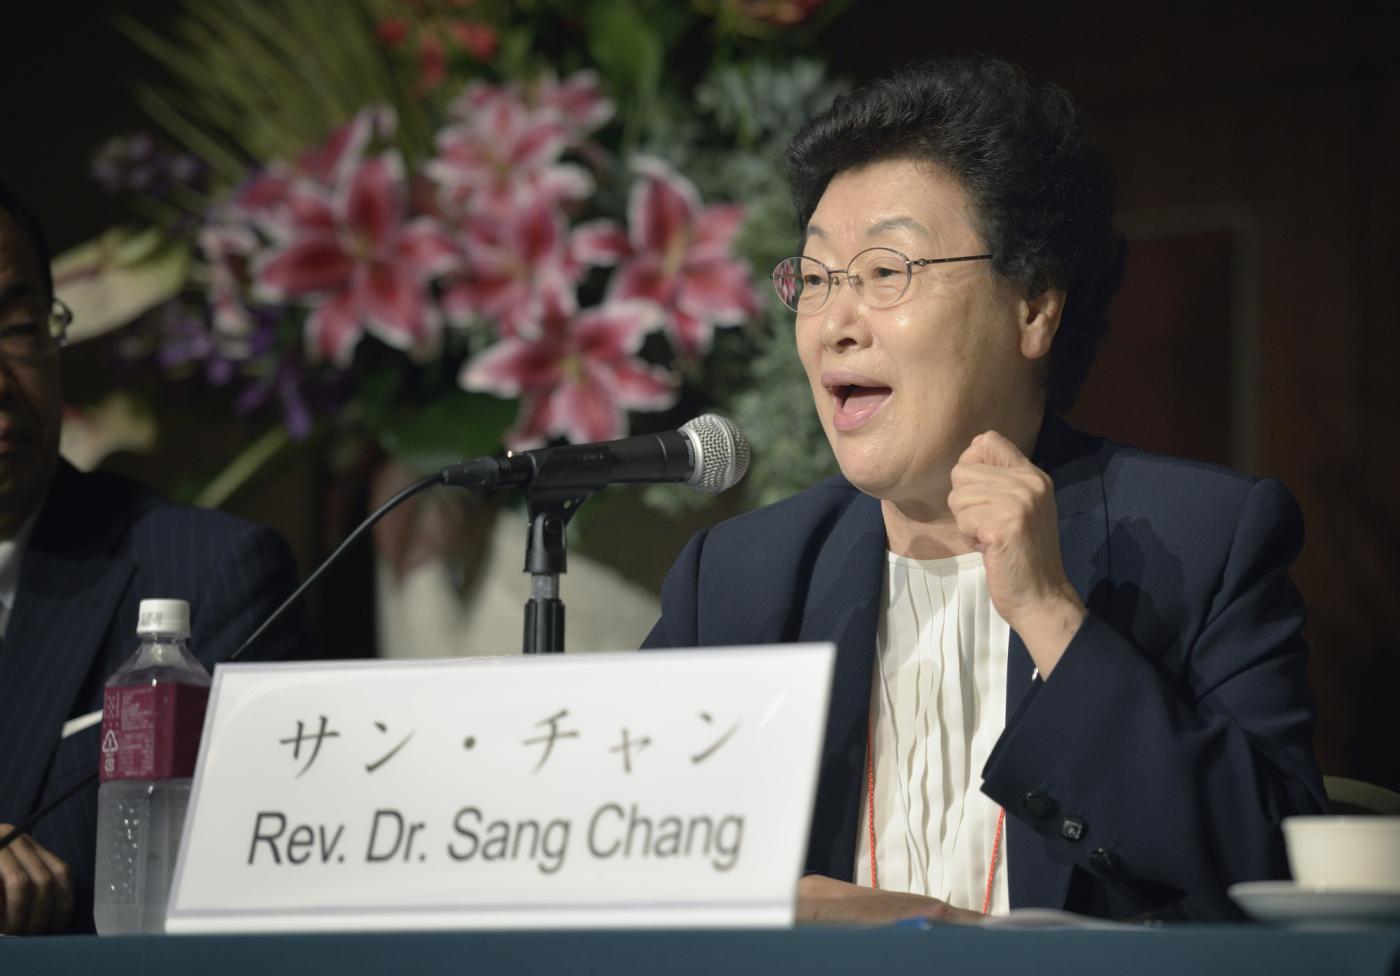 The Rev. Dr Chang Sang at the Nuclear Disarmament Symposium, Hiroshima. © Paul Jeffrey/WCC